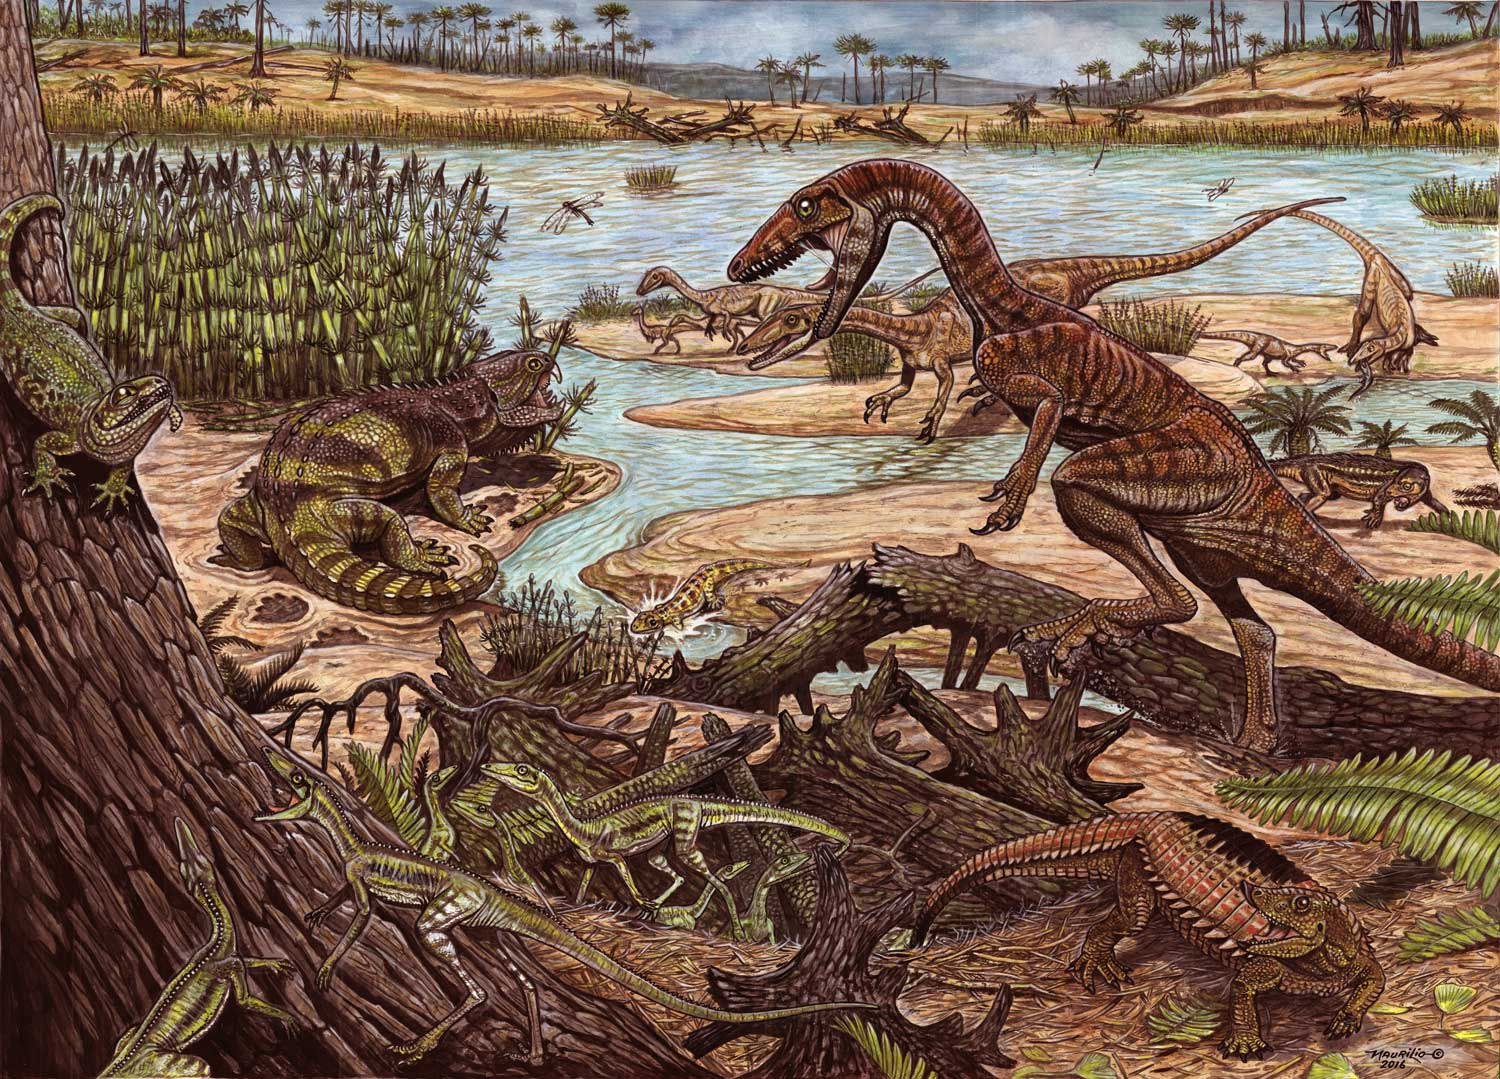 Мезозойская эра триас. Динозавры Триасового периода. Меловой период мезозойской эры. Первые динозавры Триасового периода. Триасовый период мезозойской эры рептилии.